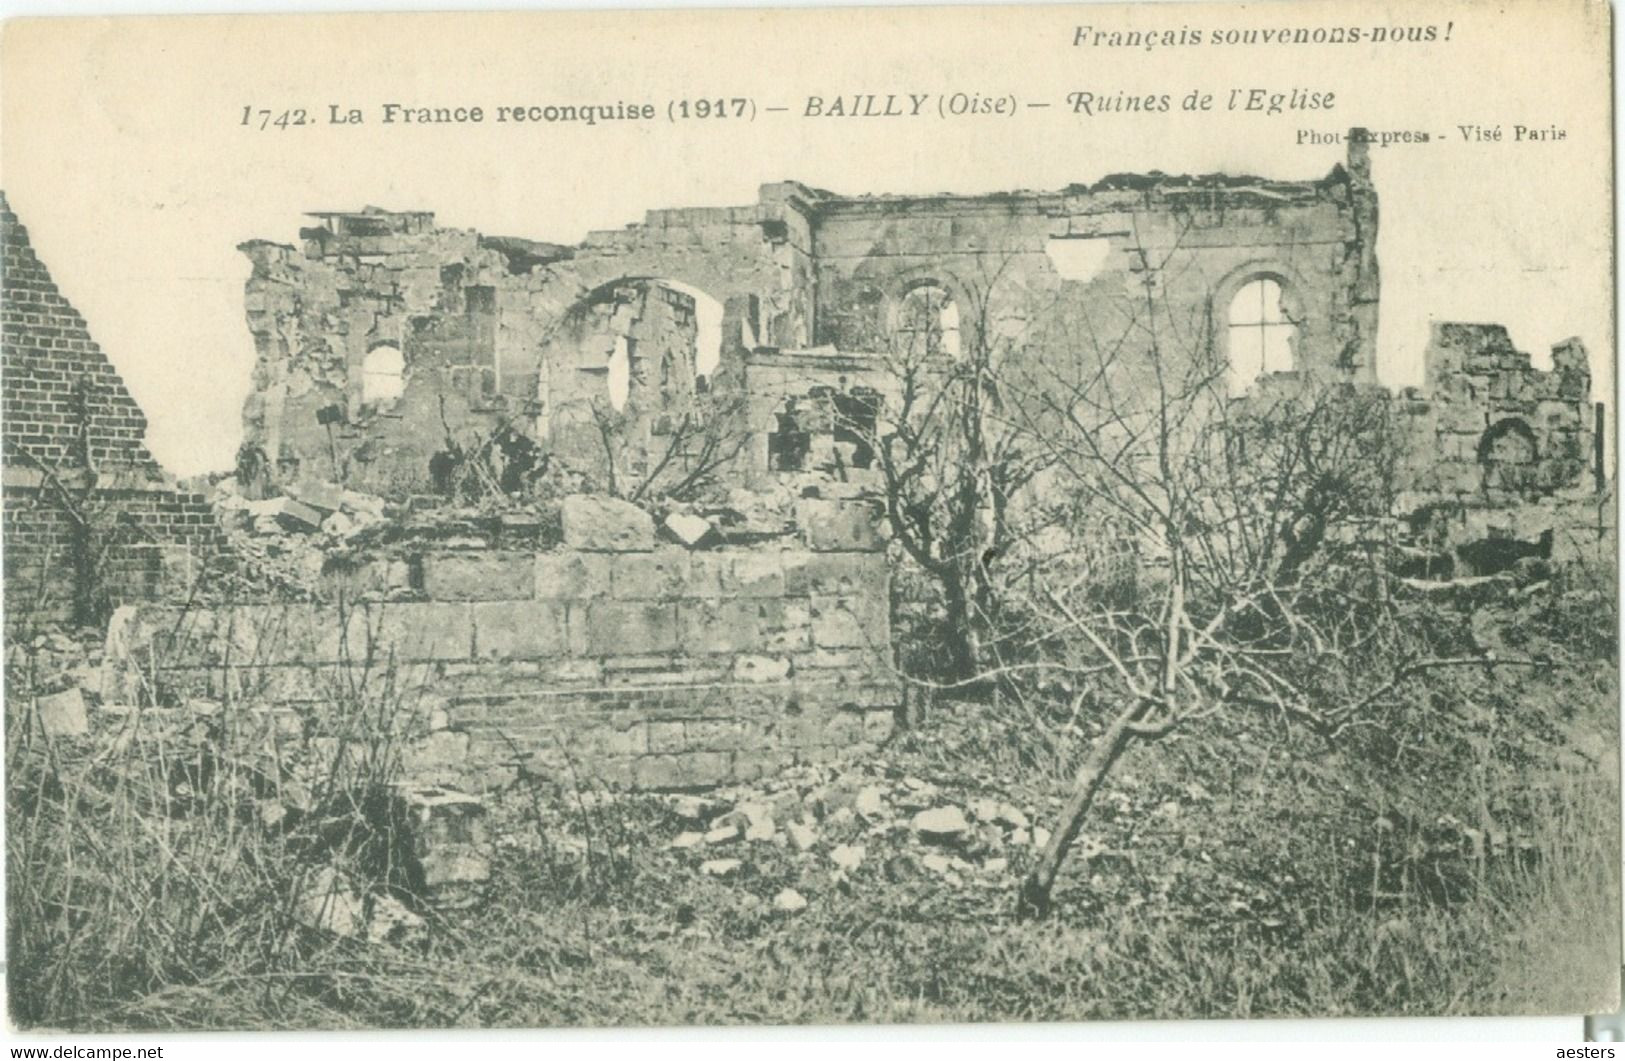 Bailly; Ruines De L'Eglise (La France Reconquise 1917) - Non Voyagé. (Baudinière - Paris) - Thourotte